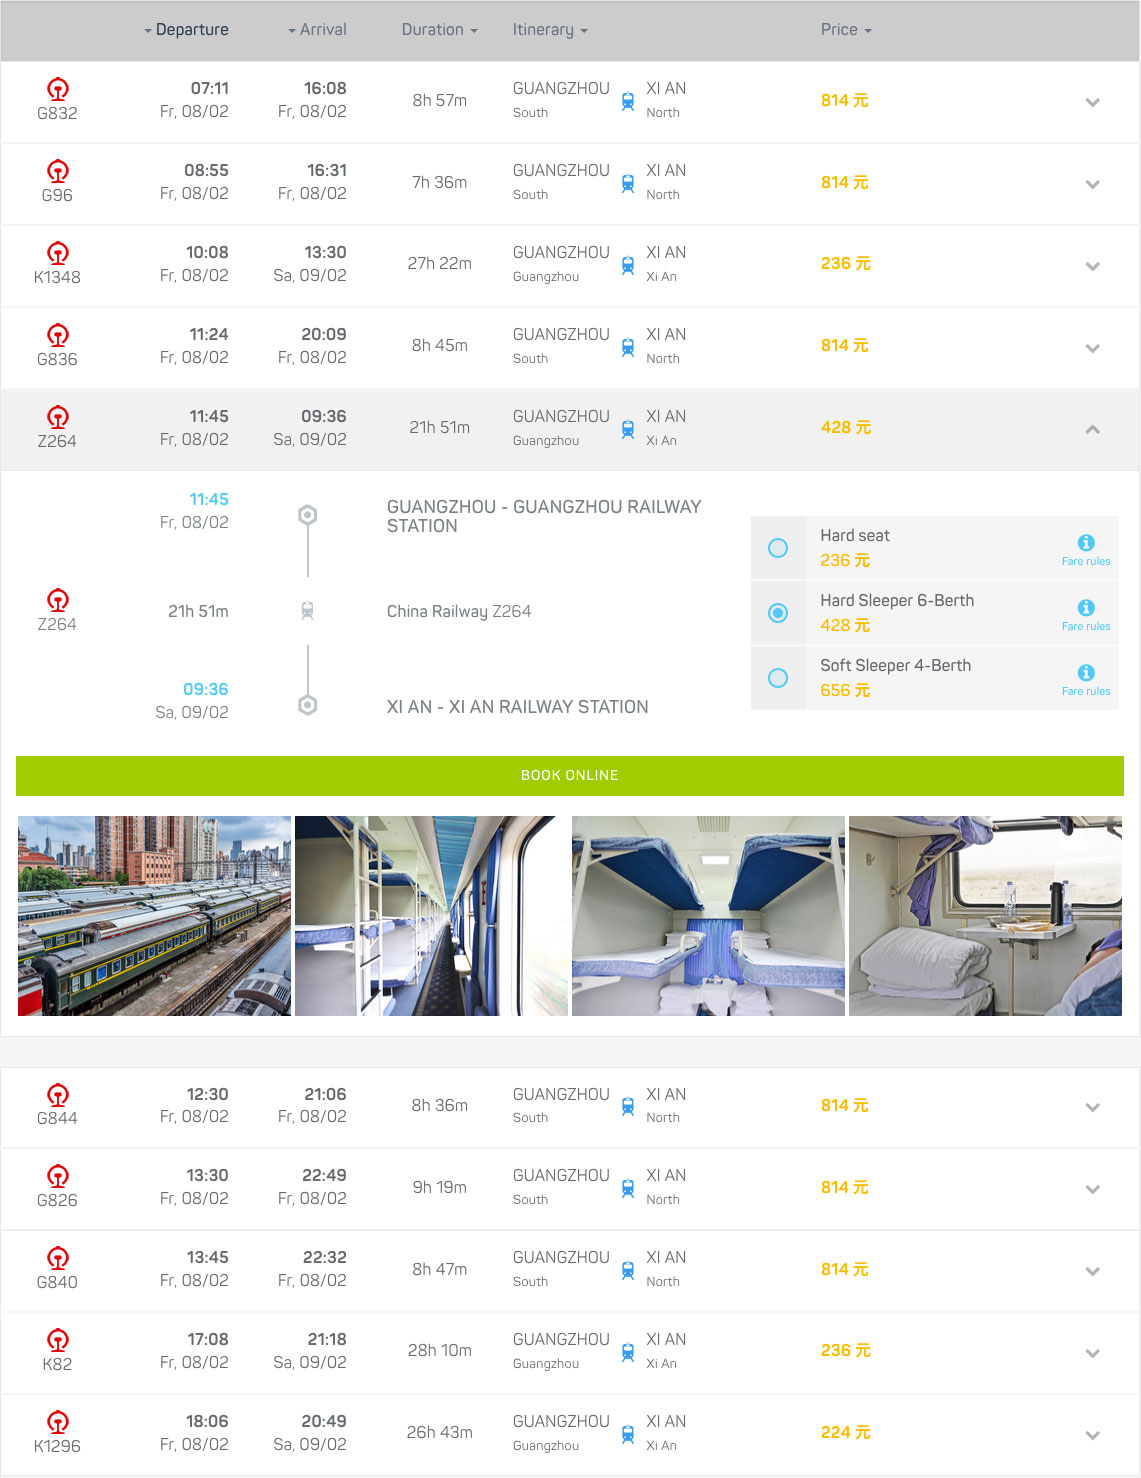 Book your train tickets from Guangzhou to Xi'an